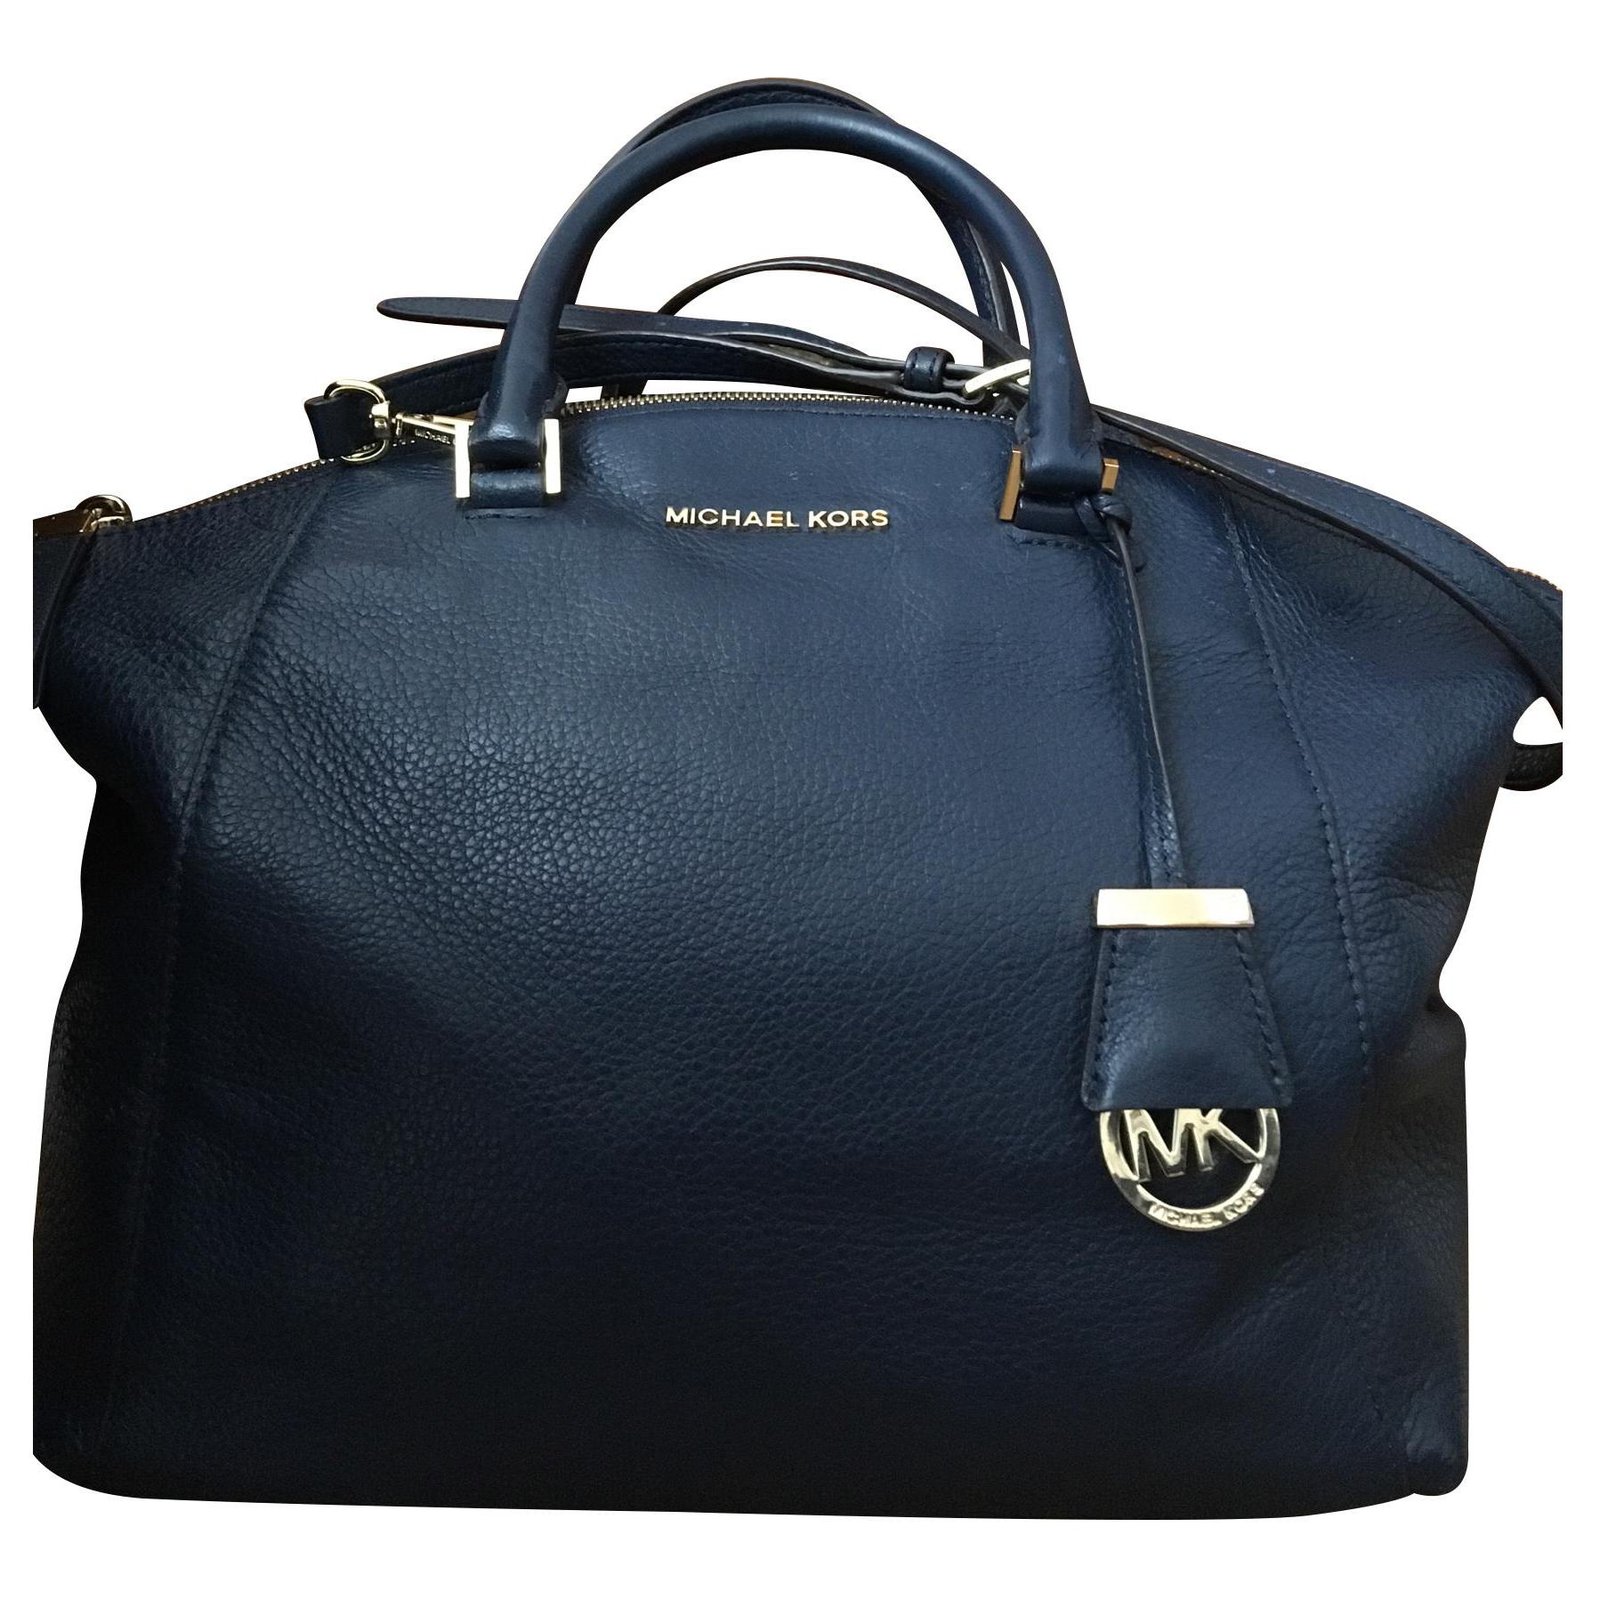 navy blue michael kors handbag